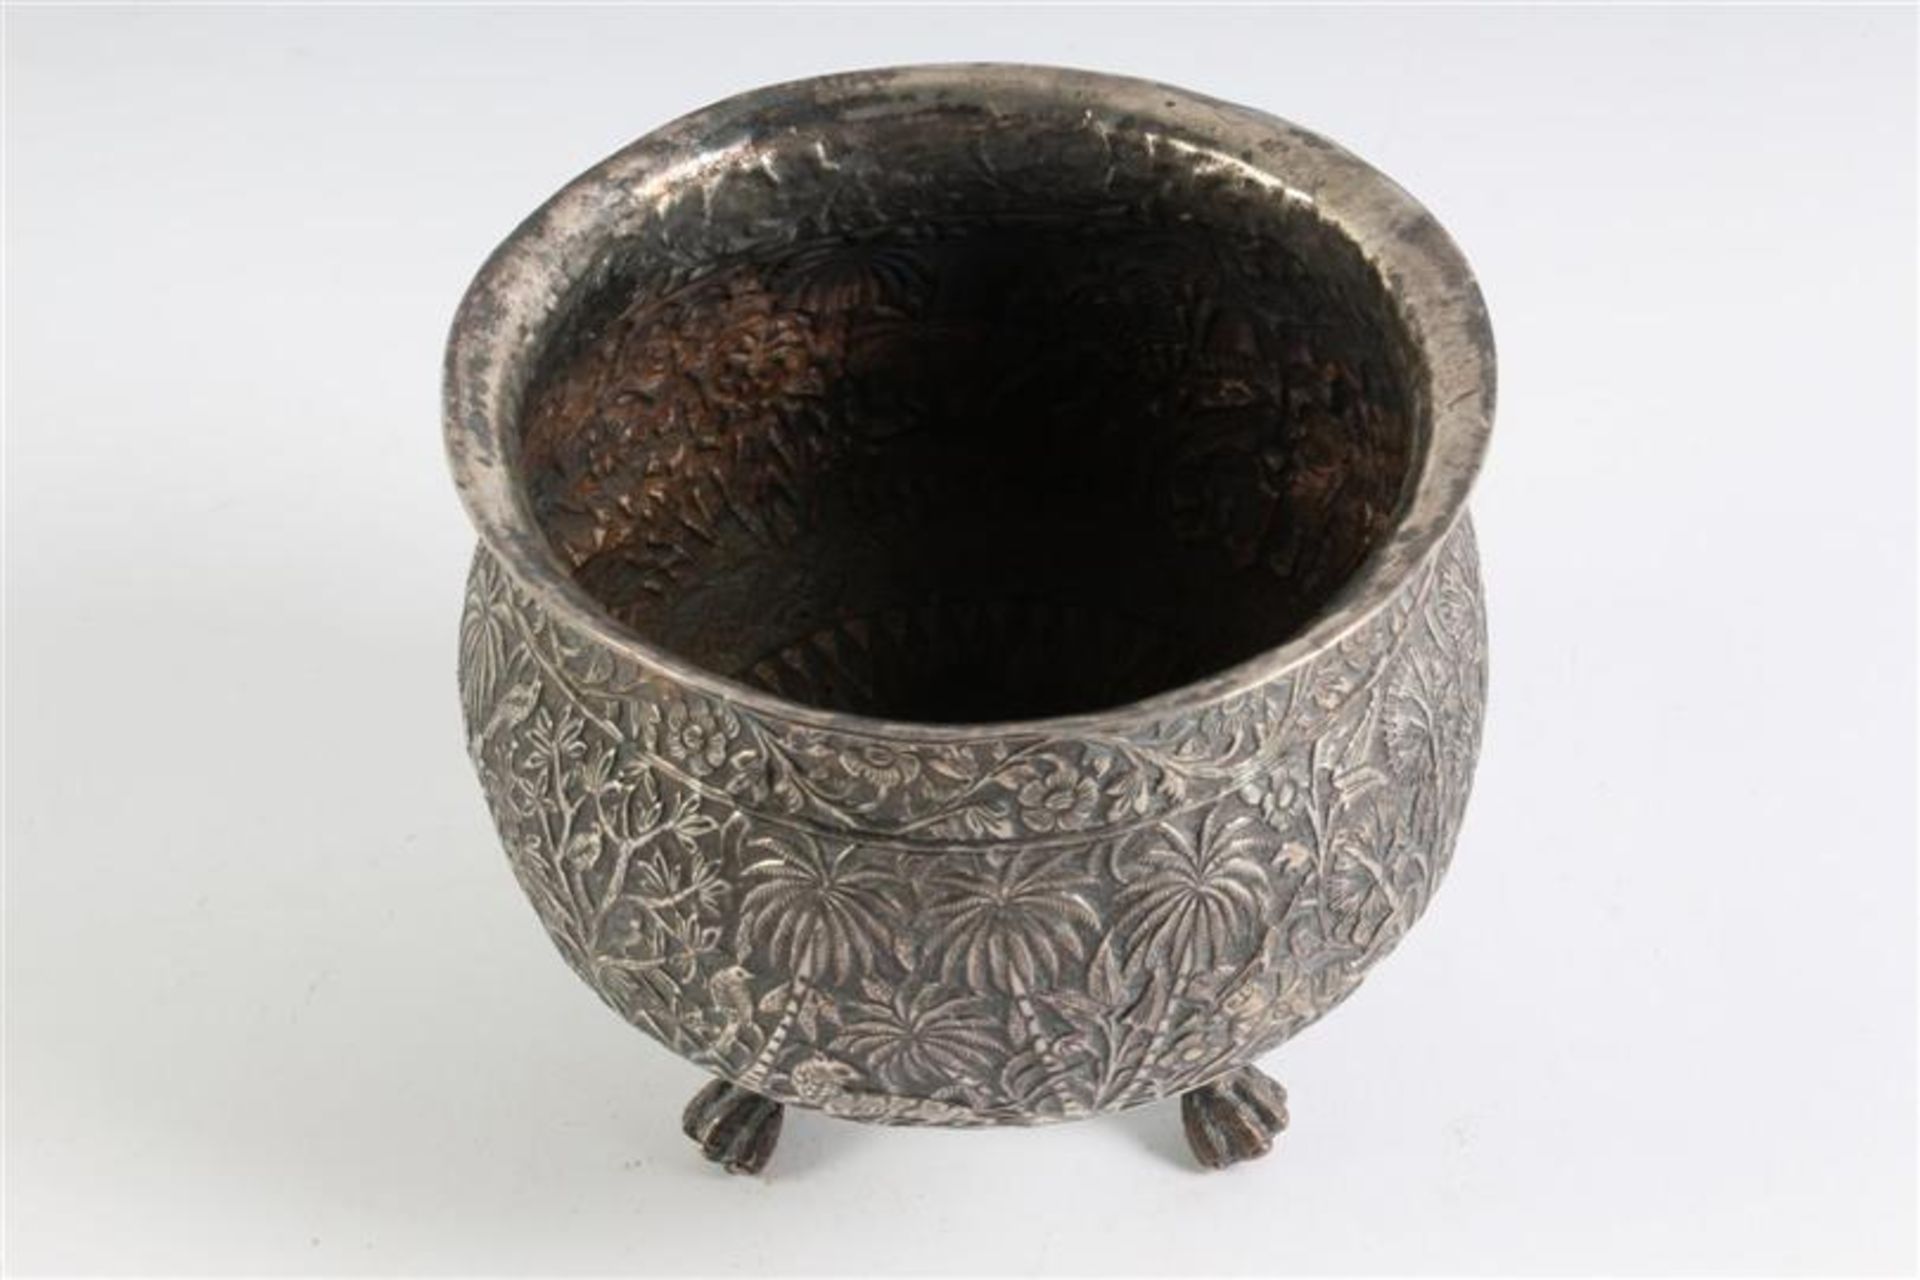 Zilveren cachepot, Perzisch gedecoreerd. HxD: 11 x 11.5 cm. - Bild 2 aus 3